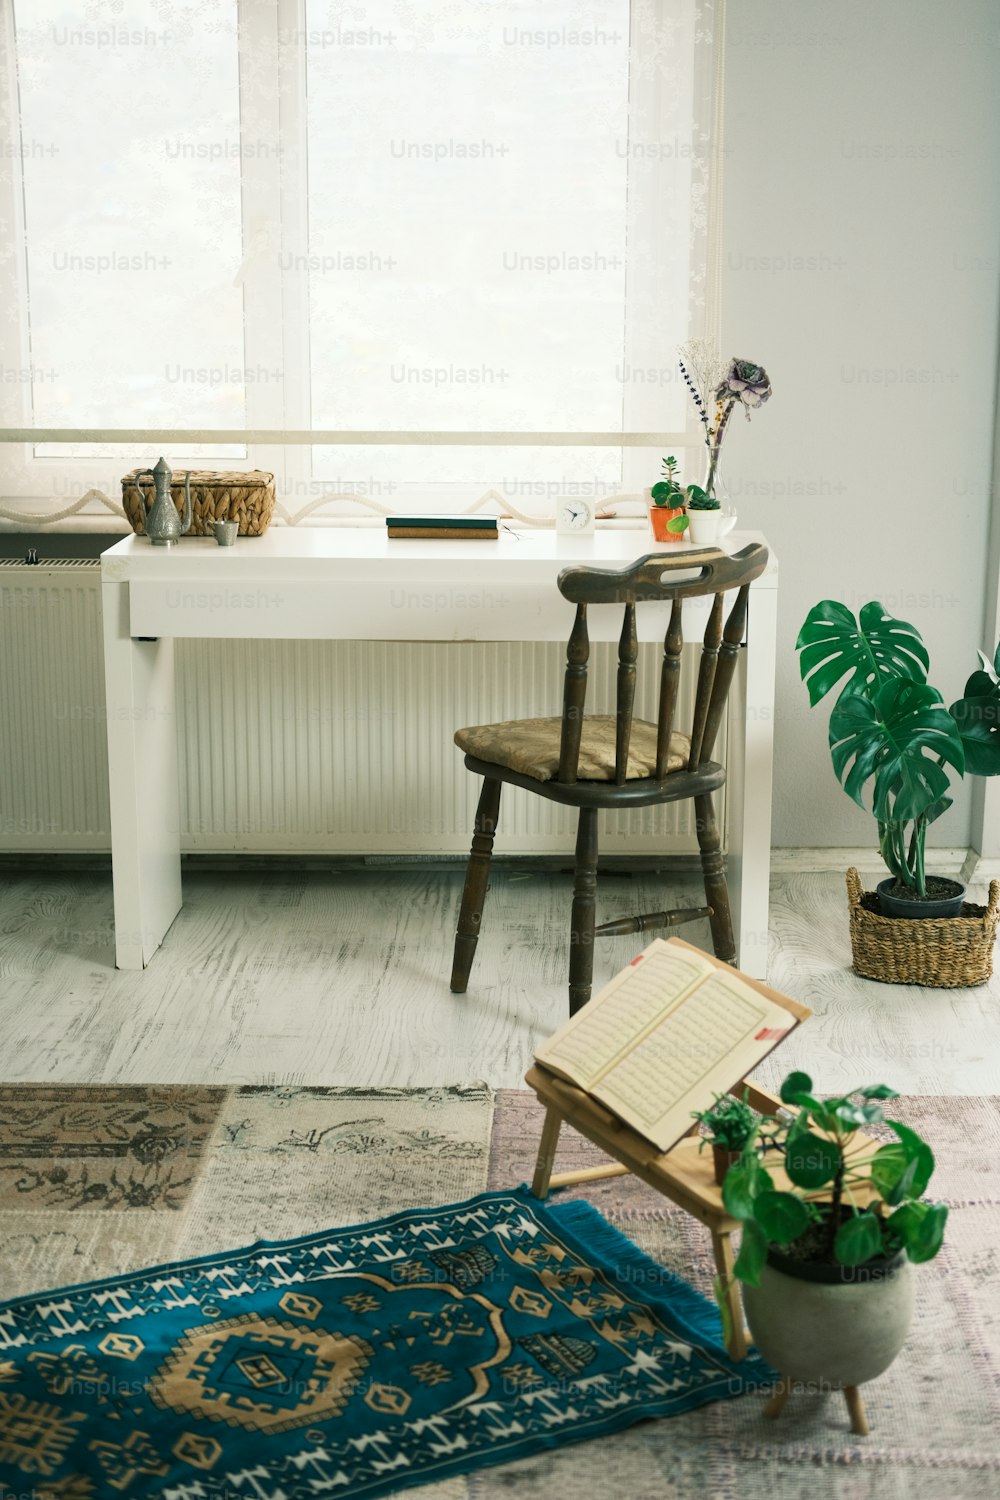 una habitación con escritorio, silla, alfombra y planta en maceta